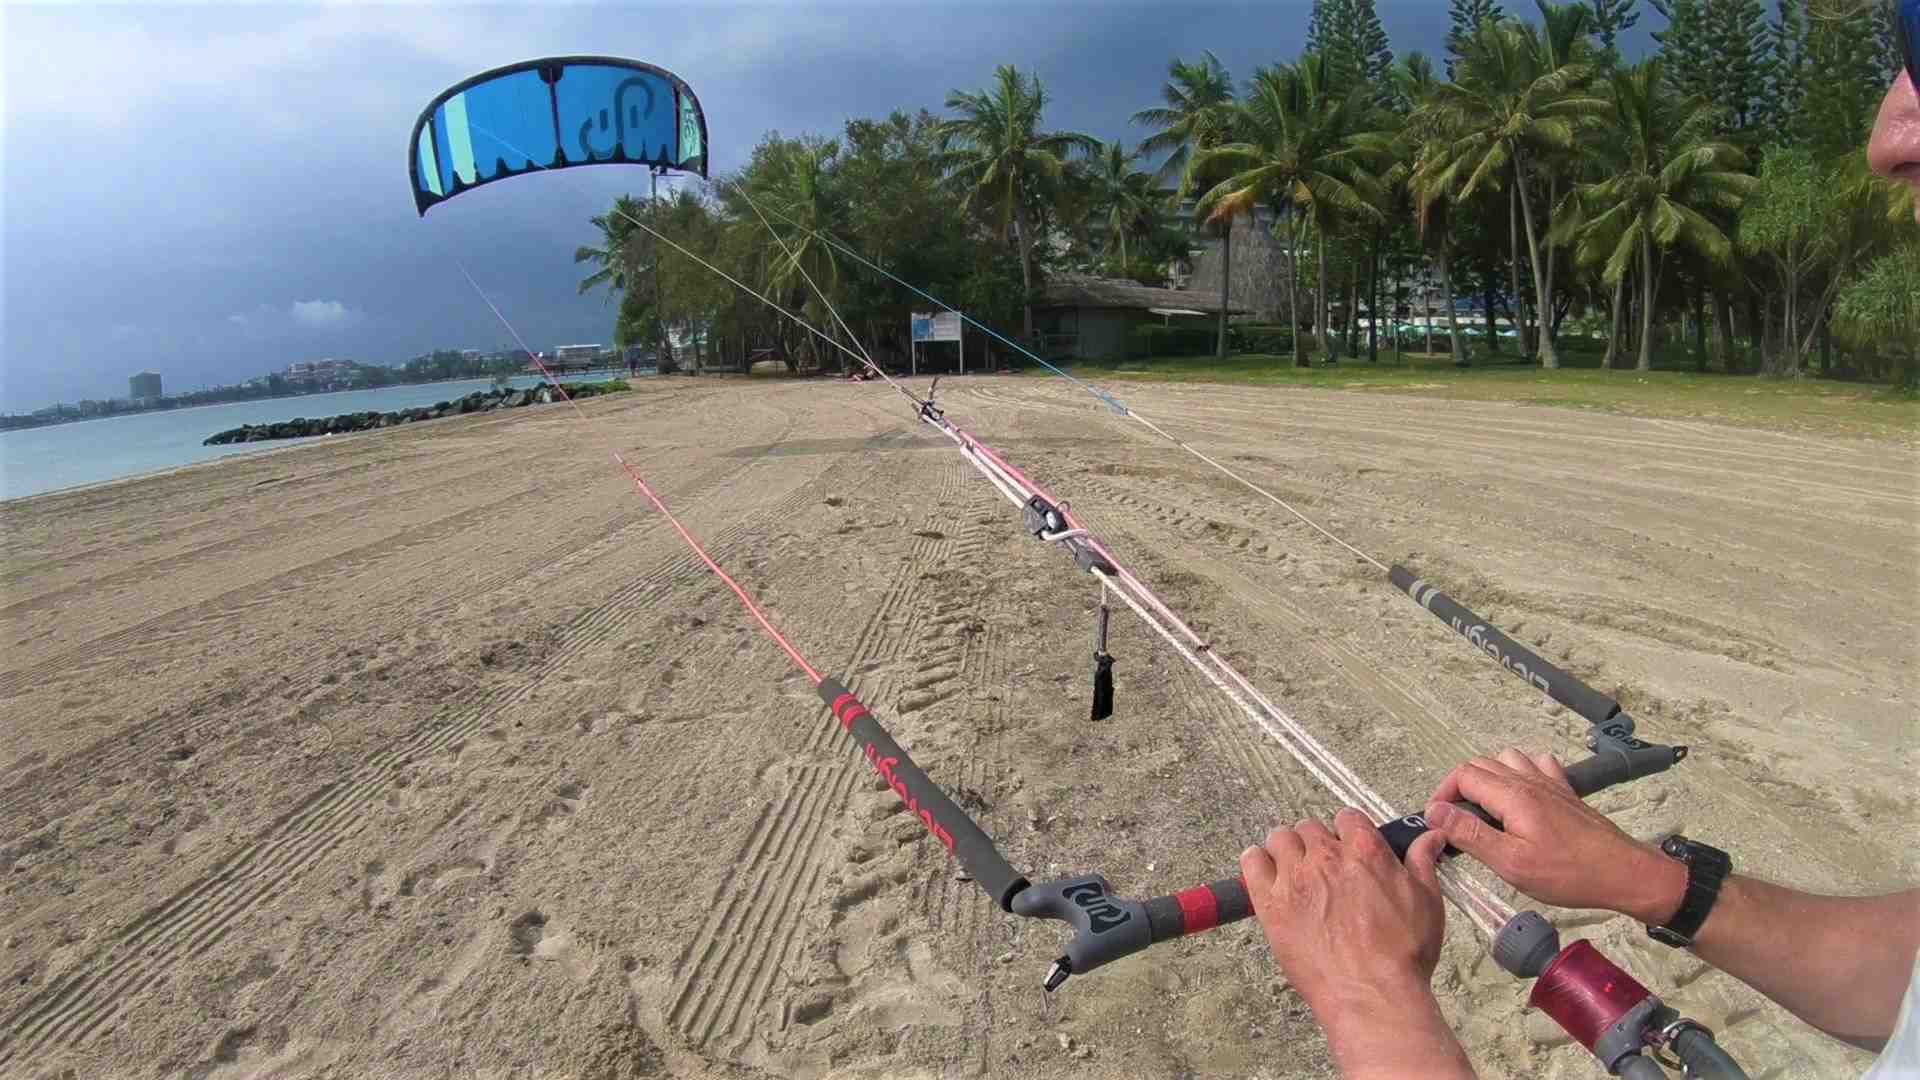 Comment diriger une aile de kite ?